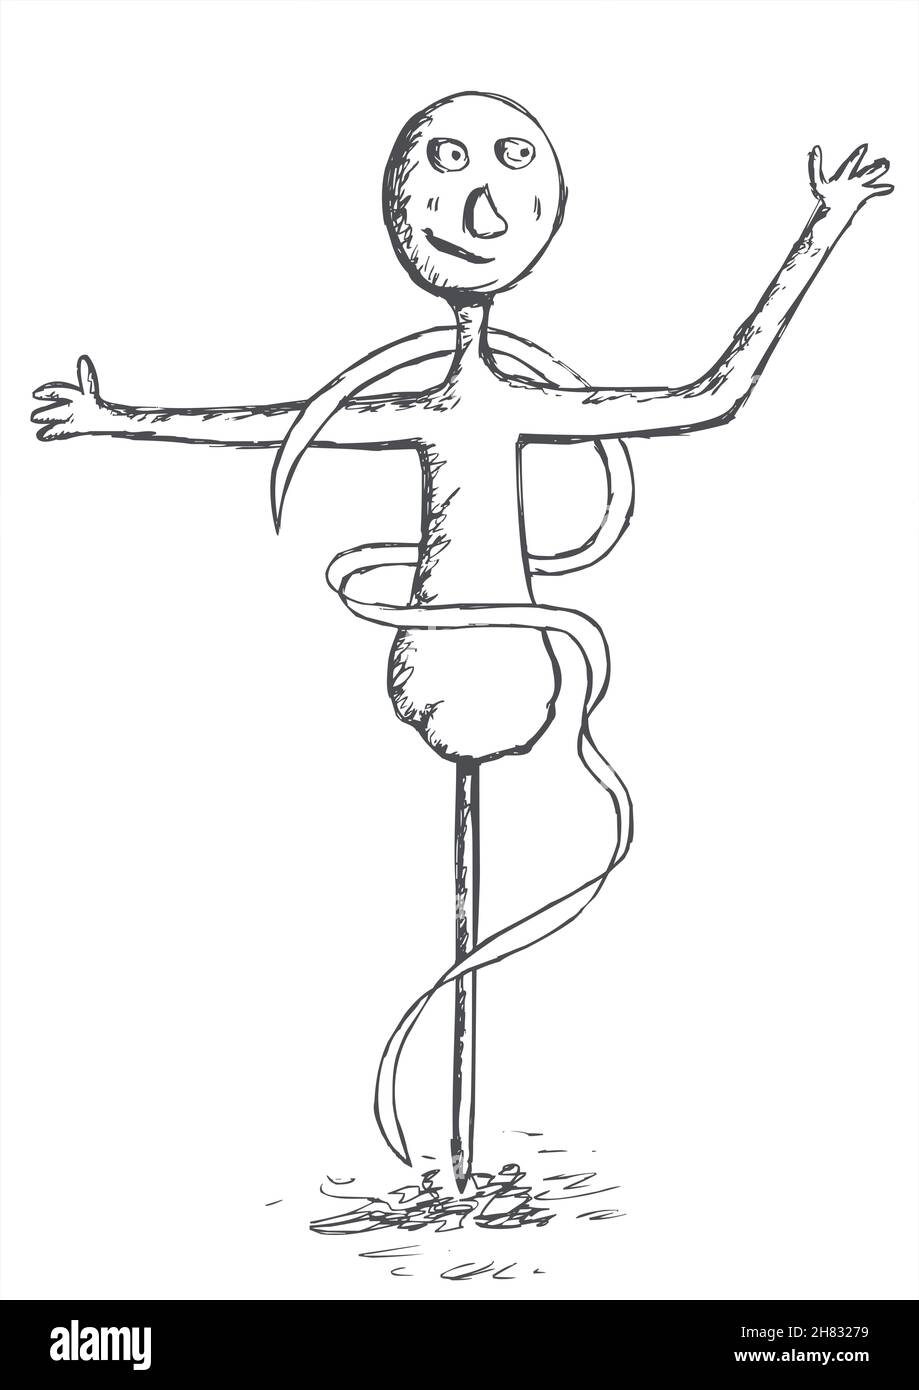 Personnage symbolique dansant, dessine et esquissé Illustration de Vecteur